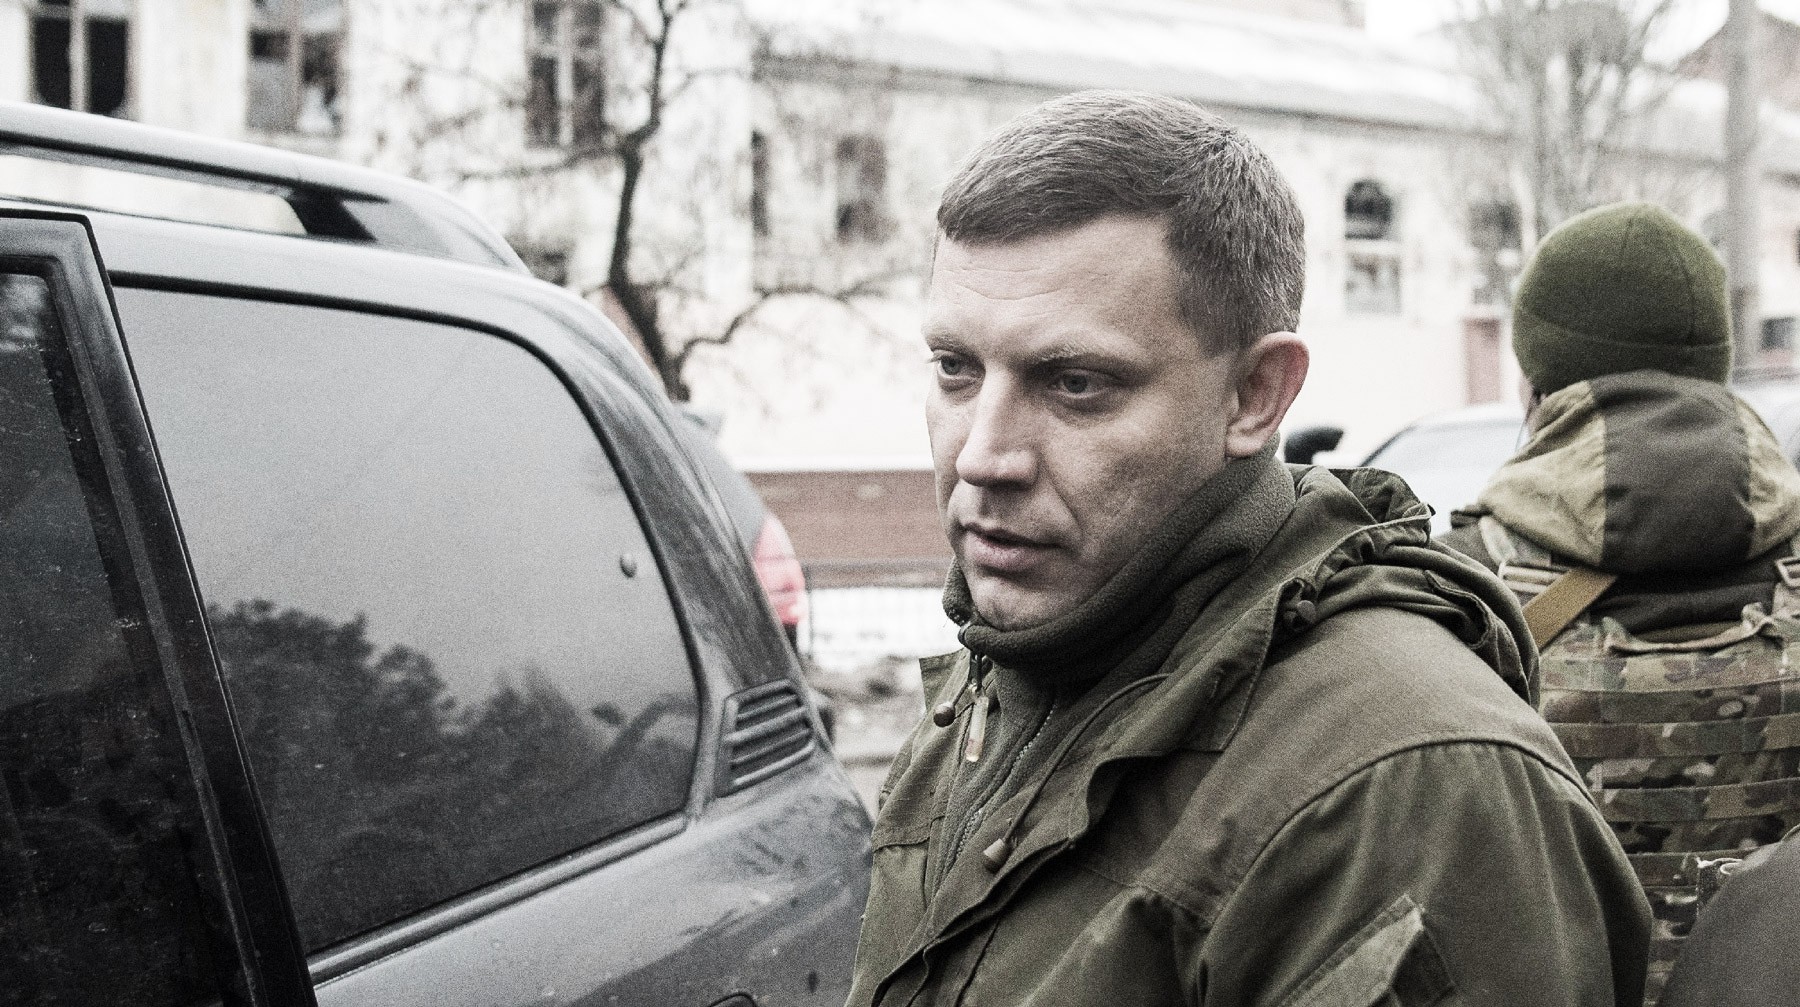 Dailystorm - Глава ДНР погиб в результате взрыва в центре Донецка